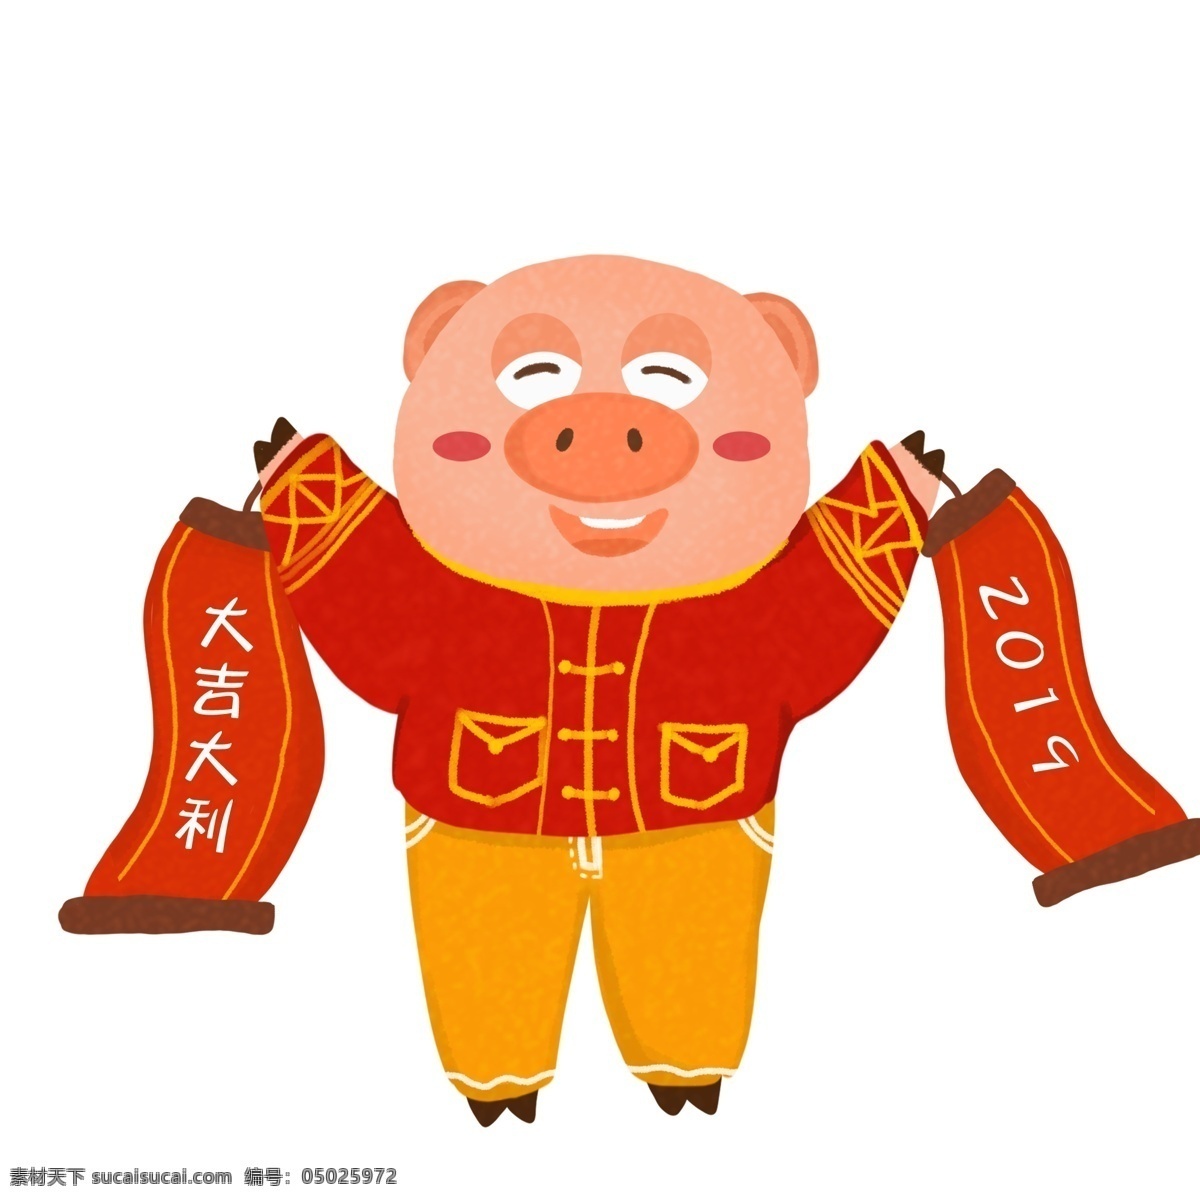 动漫卡通 猪 插画 过年 高清 春节 炮竹 猪年 猪猪 背景 金子 原创 开心 2019 新年 习俗 手绘猪年